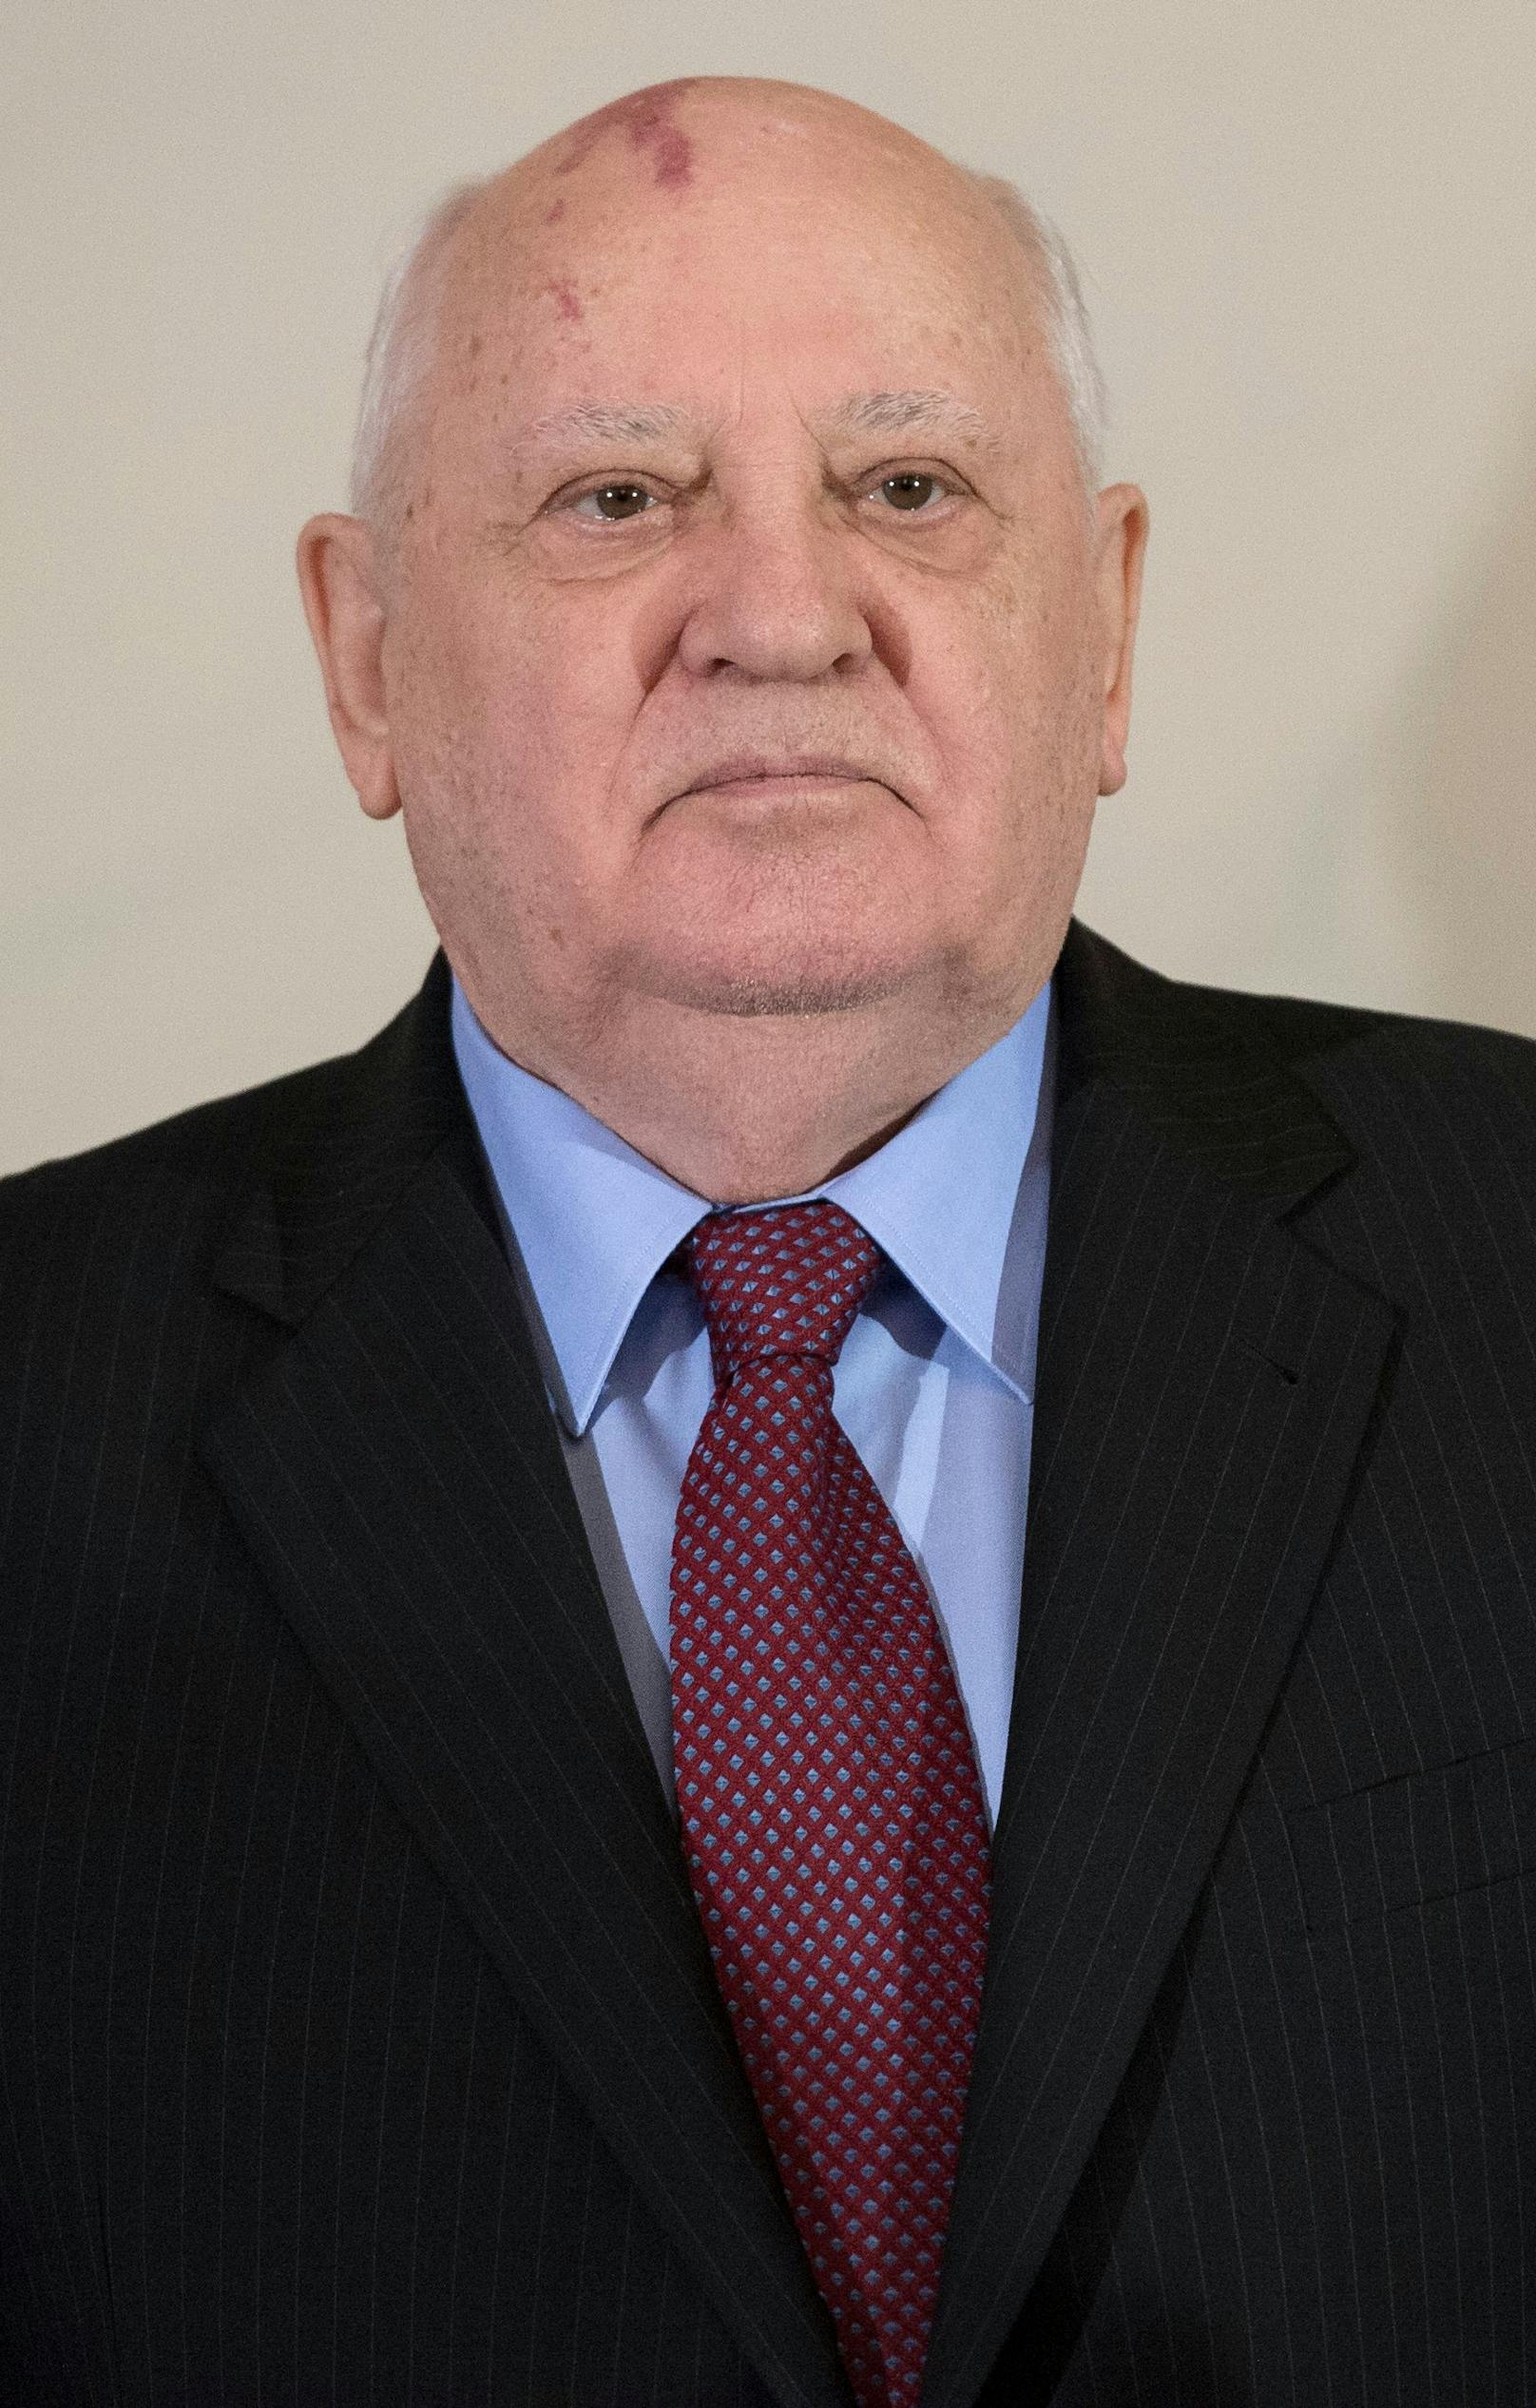 <strong>Michail Gorbatschow</strong>,&nbsp;ehemaliger Präsident der Sowjetunion,&nbsp;starb am 30. August 2022 im Alter von 91 Jahren.